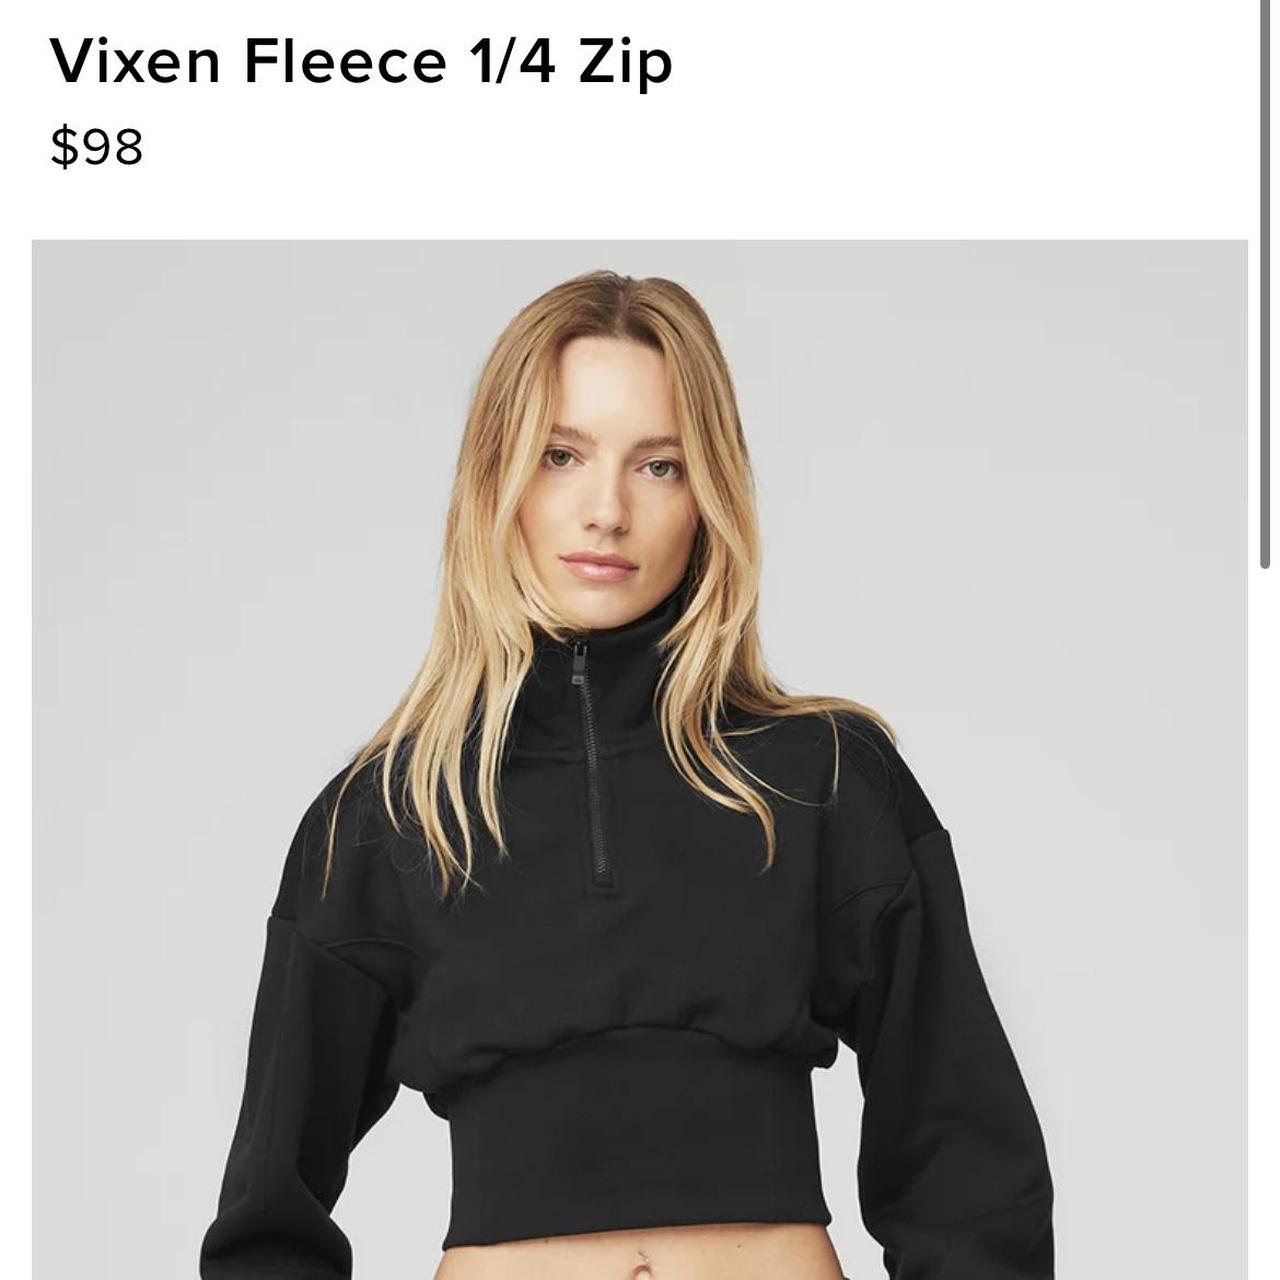 Alo Yoga Vixen Fleece 1/4 Zip , New w/o Tags!, Size